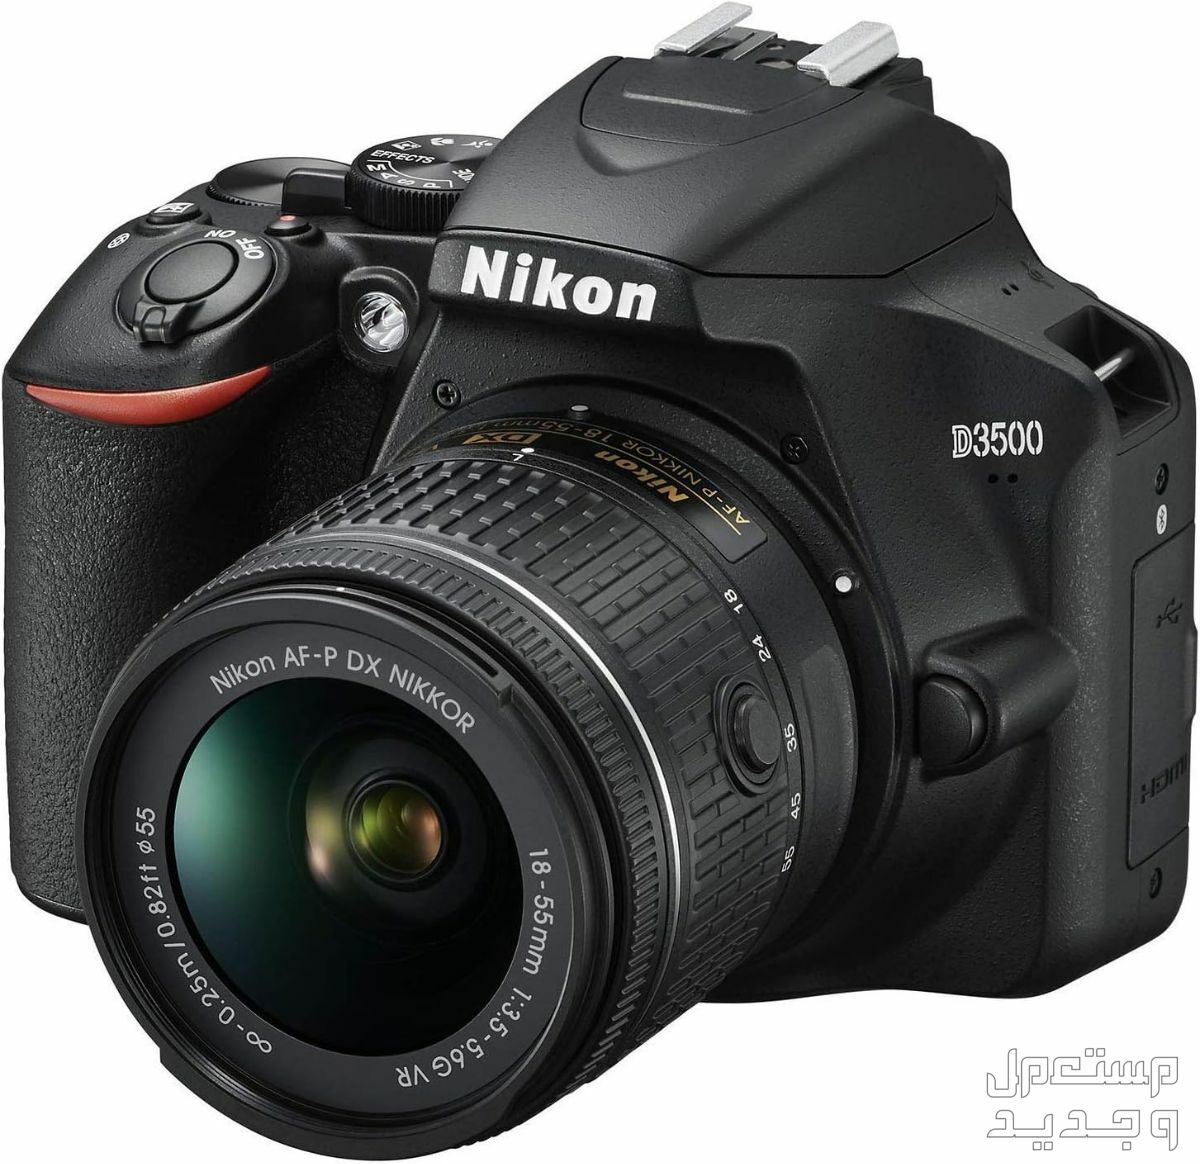 10 كاميرات تصوير ماركات عالمية بأسعار رخيصة مميزات كاميرا Nikon D3500